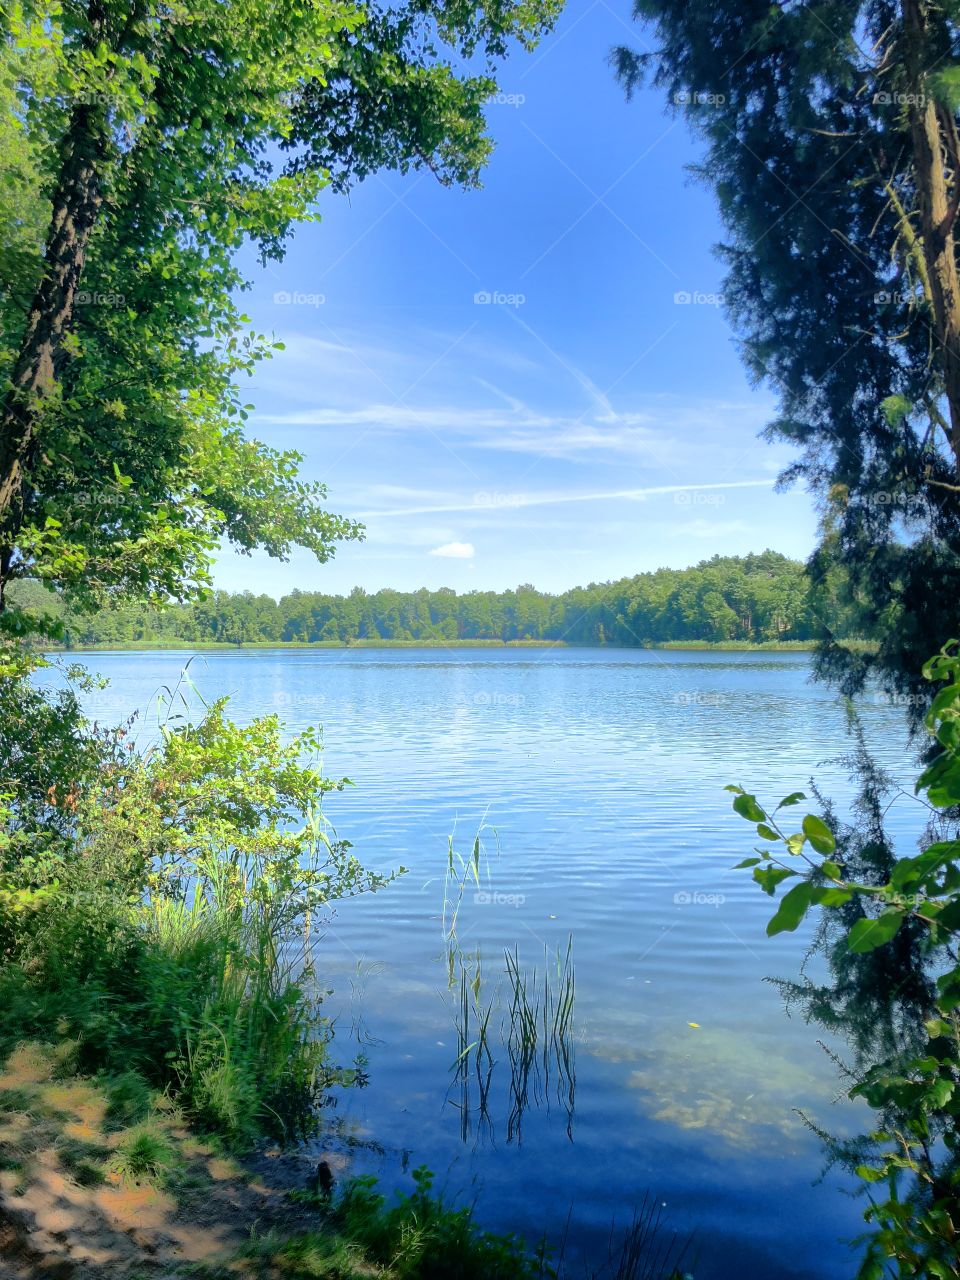 Lake 